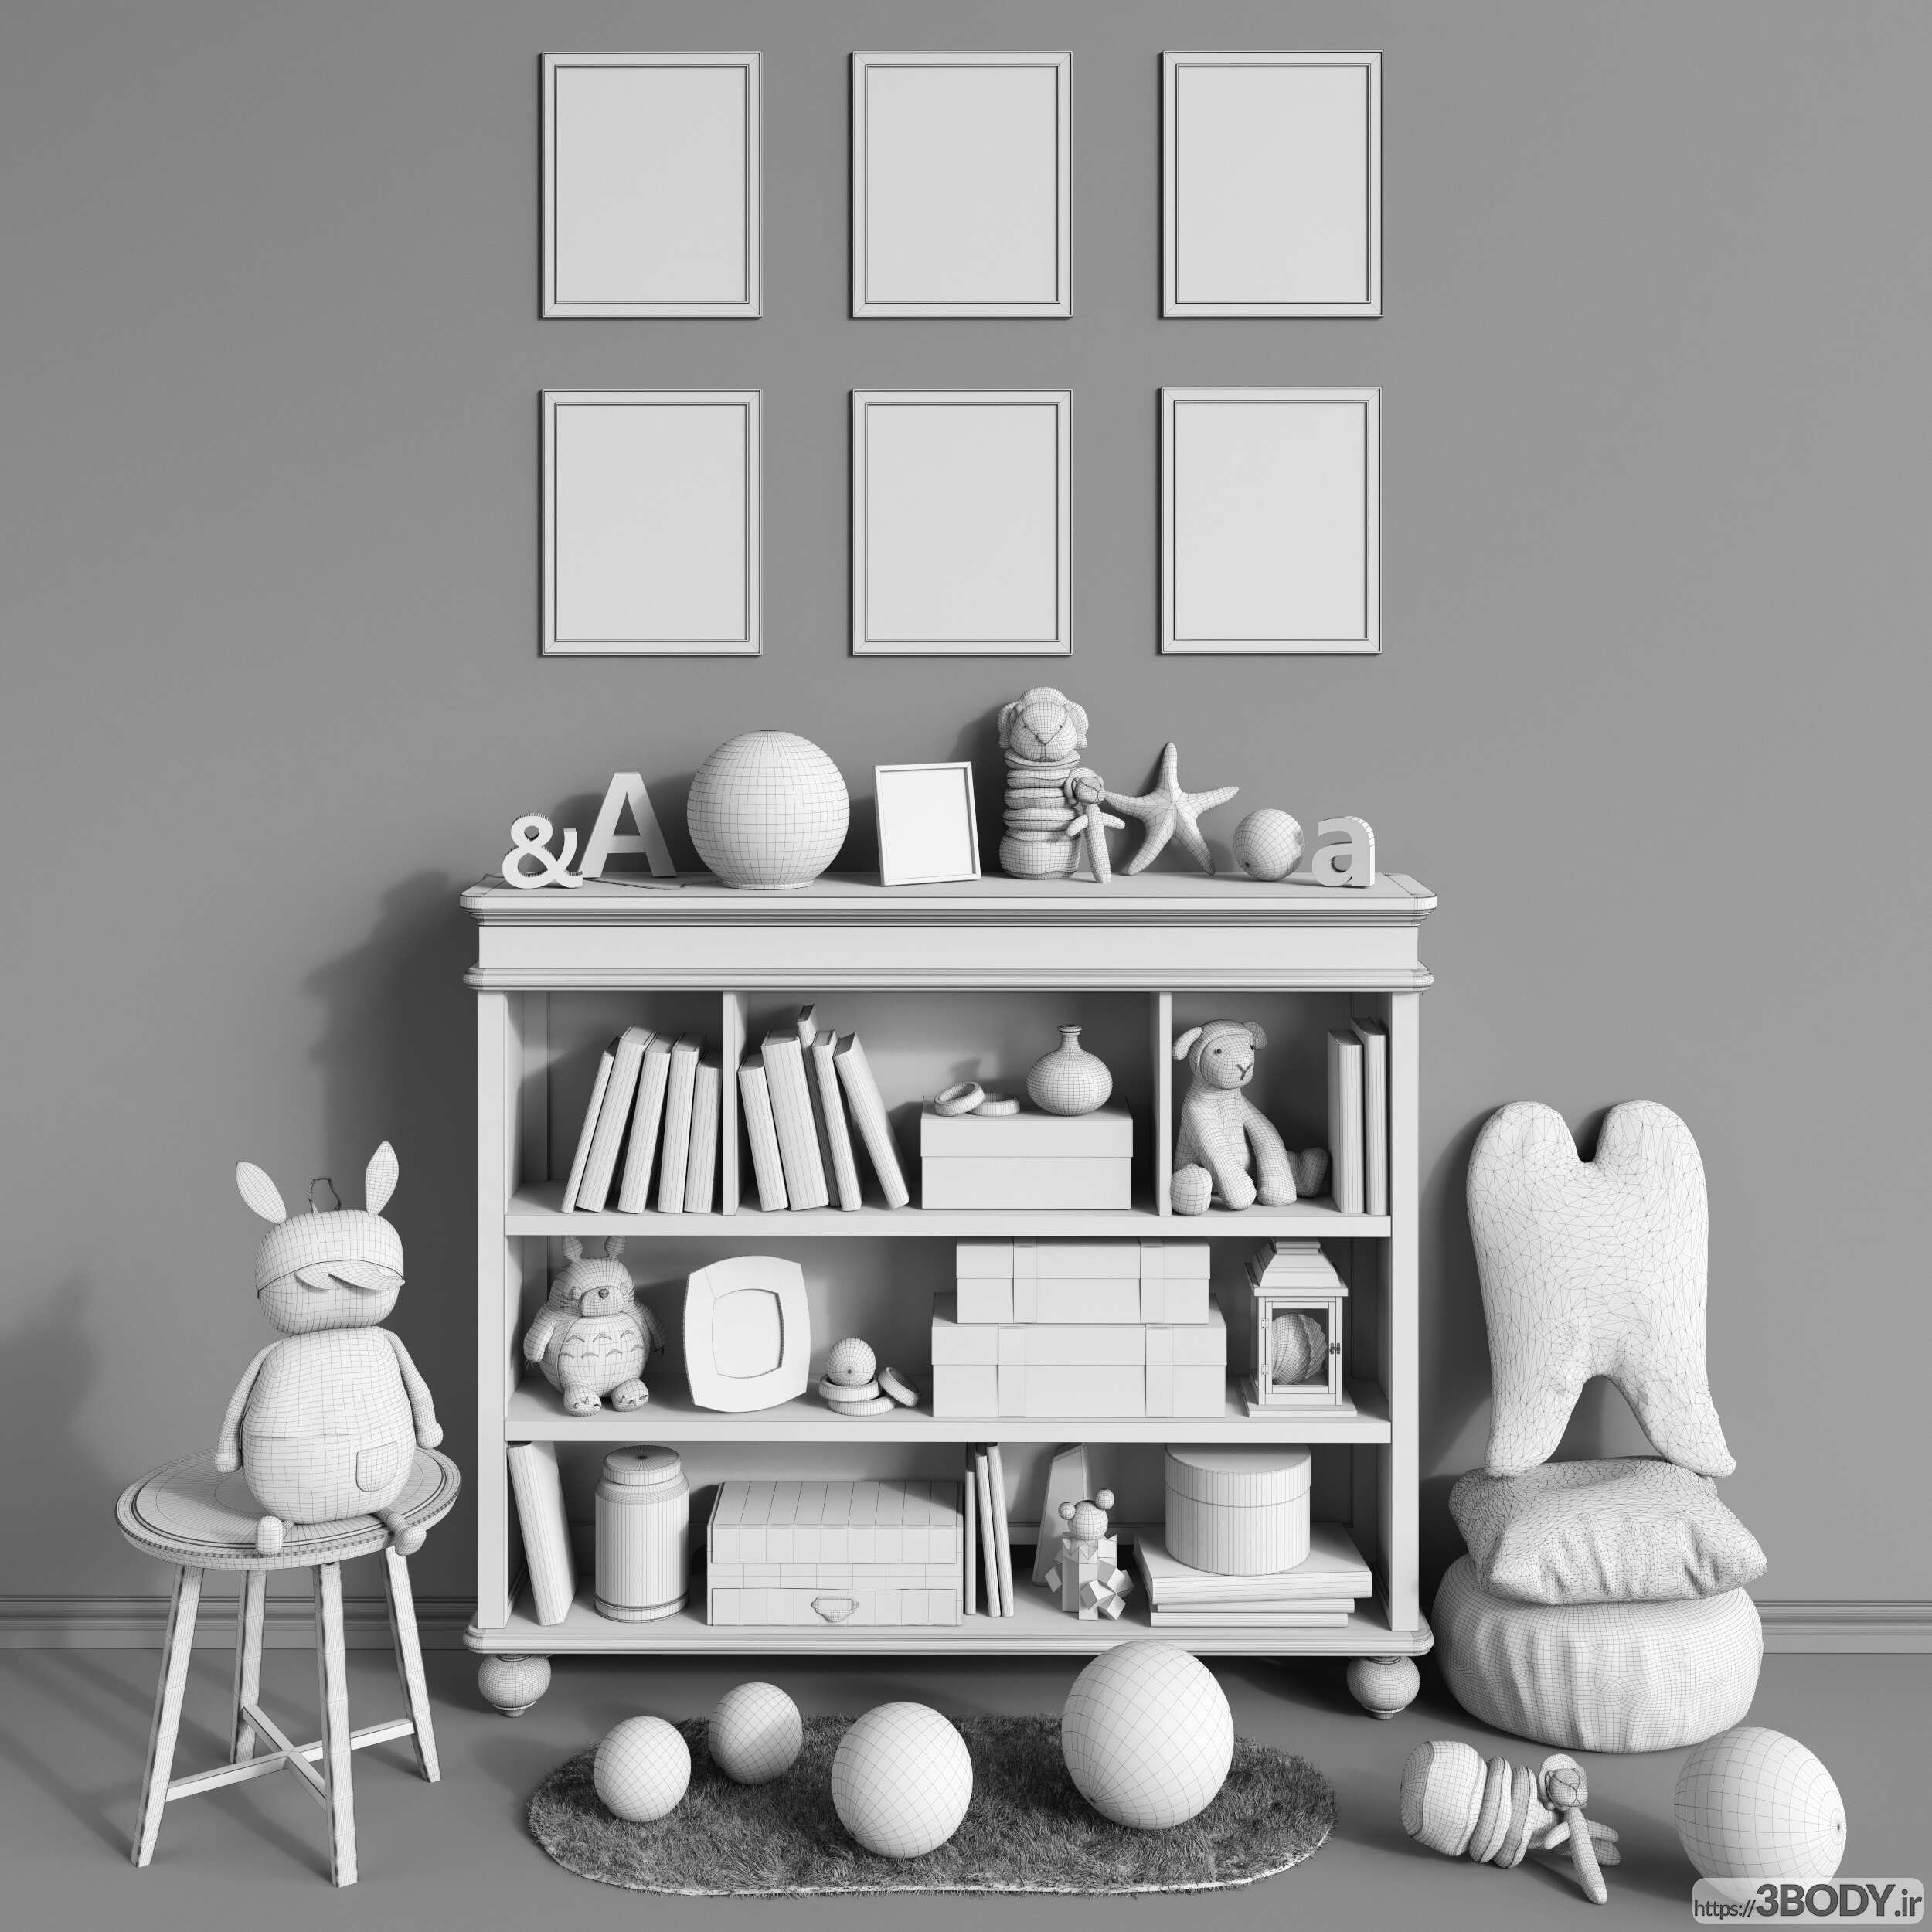 ابجکت ۳ بعدی اتاق کودک لوازم جانبی مبلمان کلاسیک - مجموعه دکوراسیون و اسباب بازی ها - 1 عکس 3